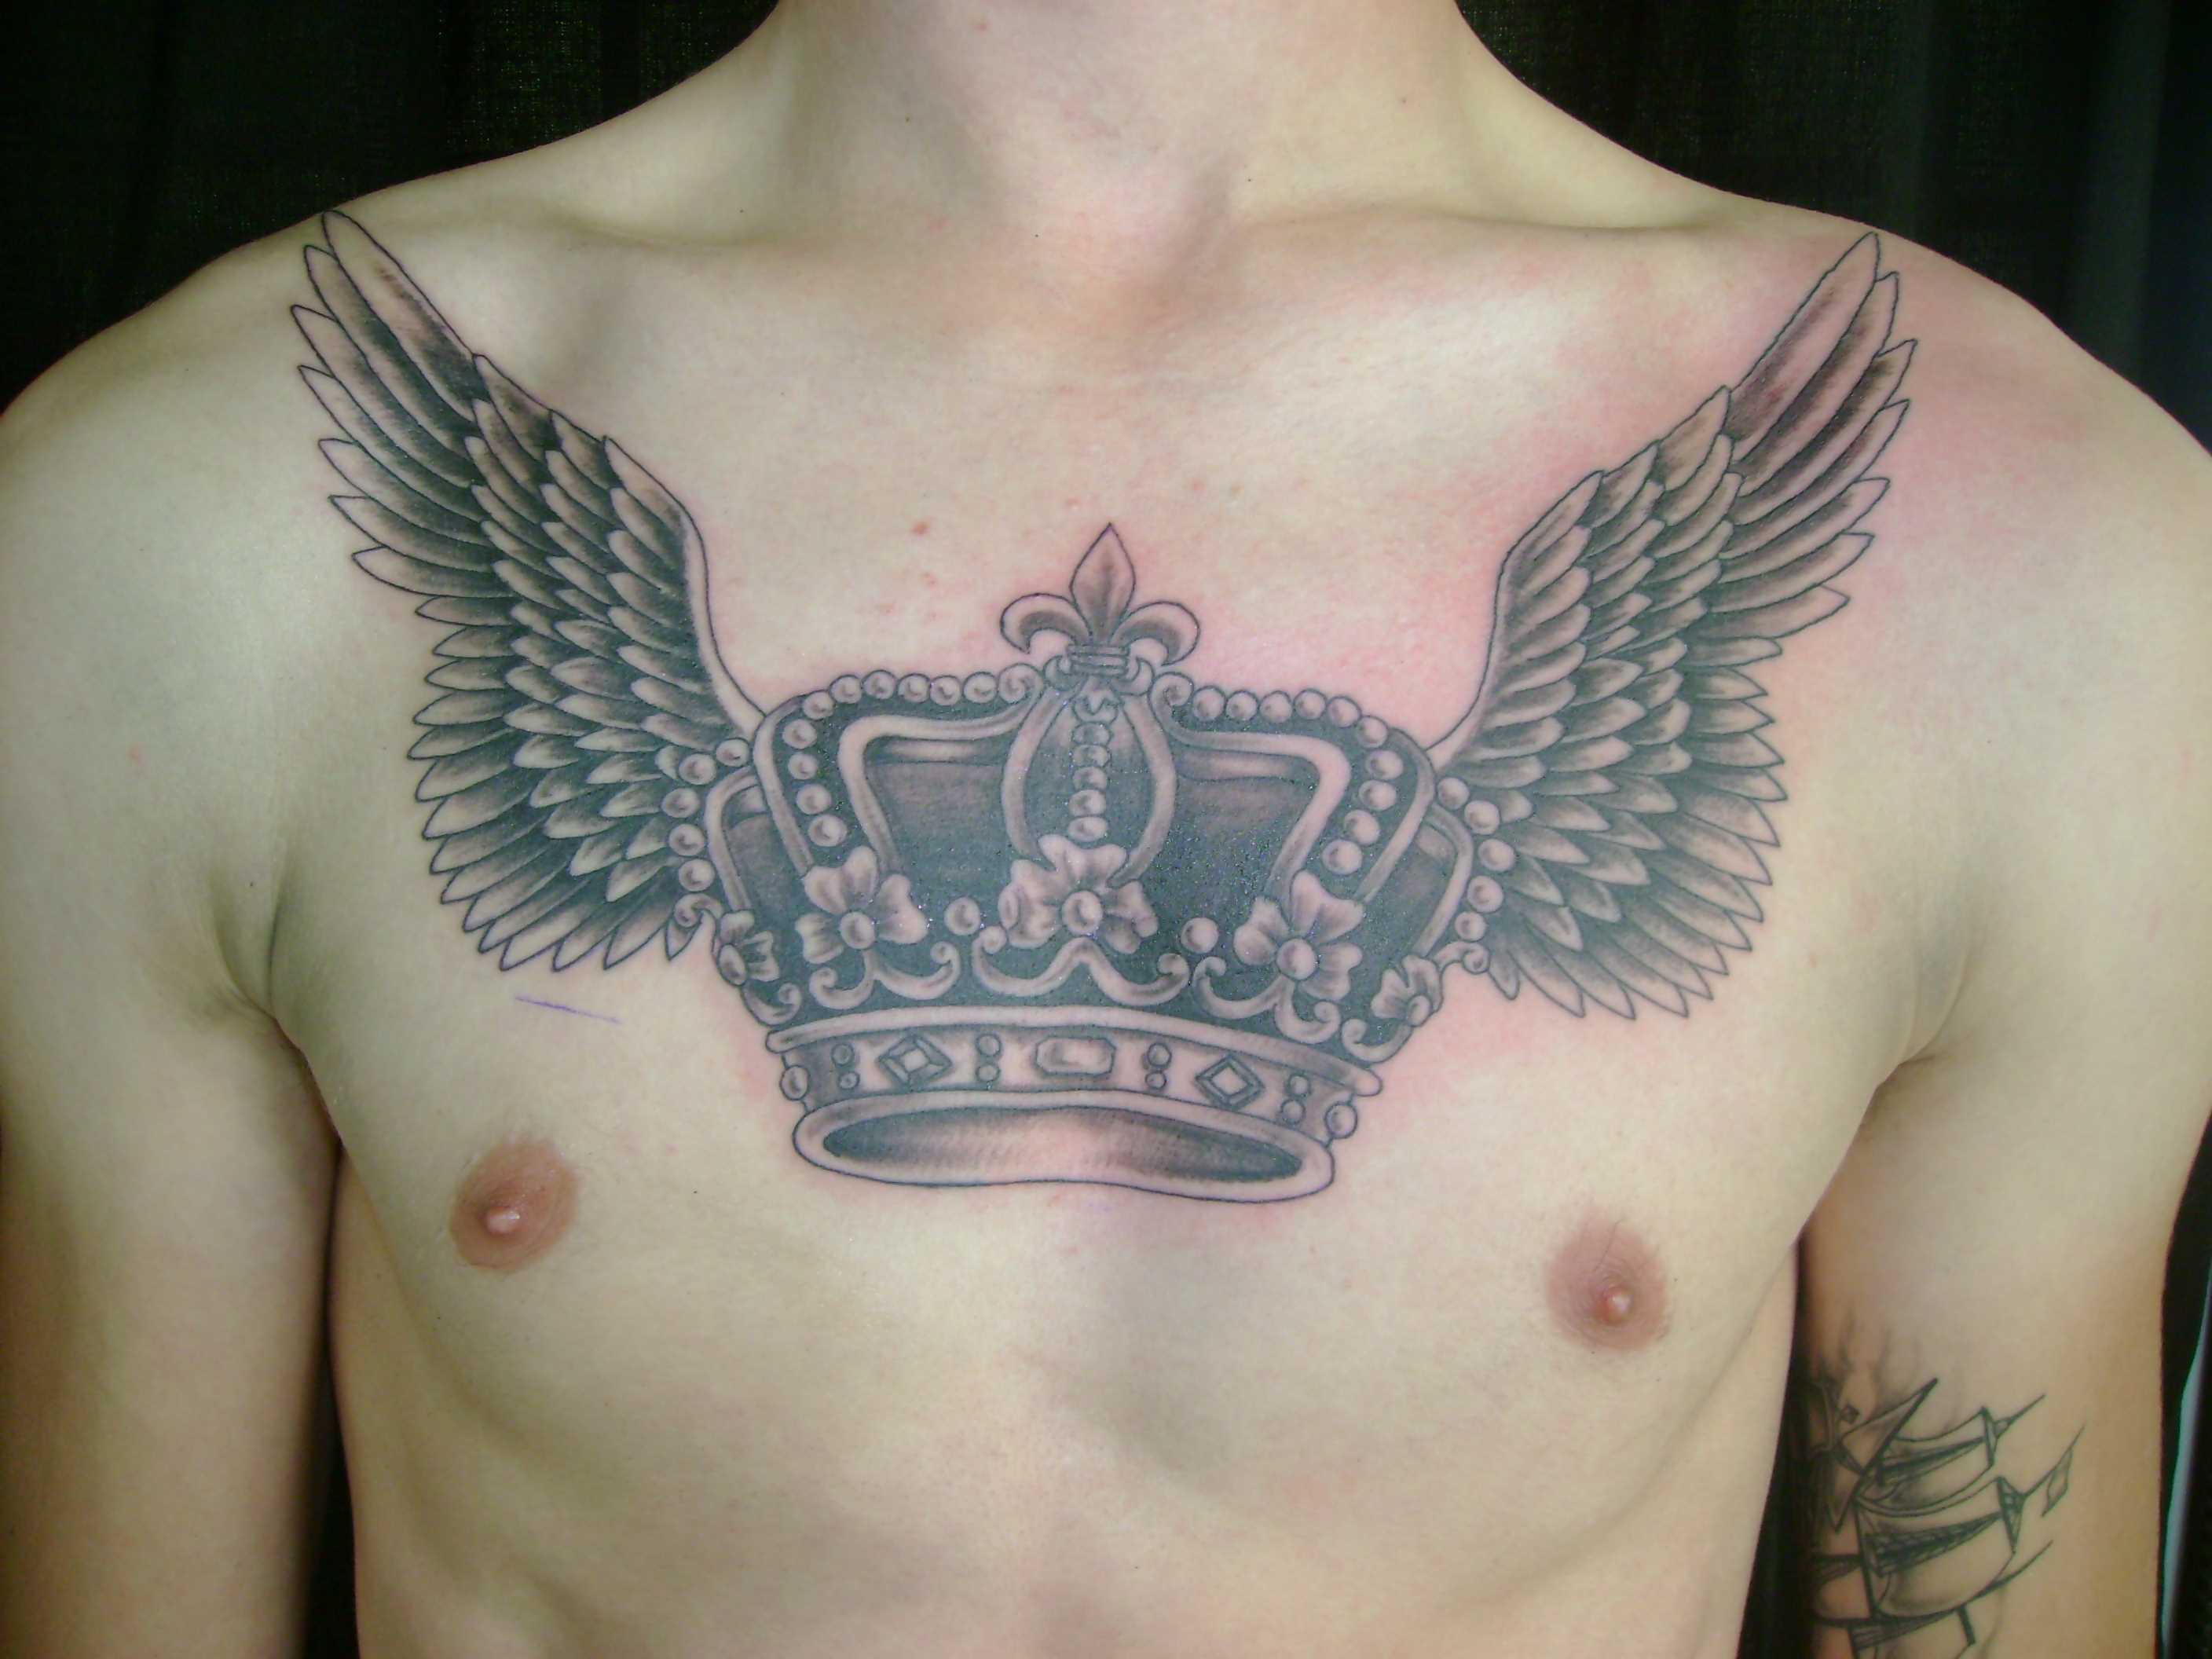 Tatuagem de coroa com asas no peito do cara